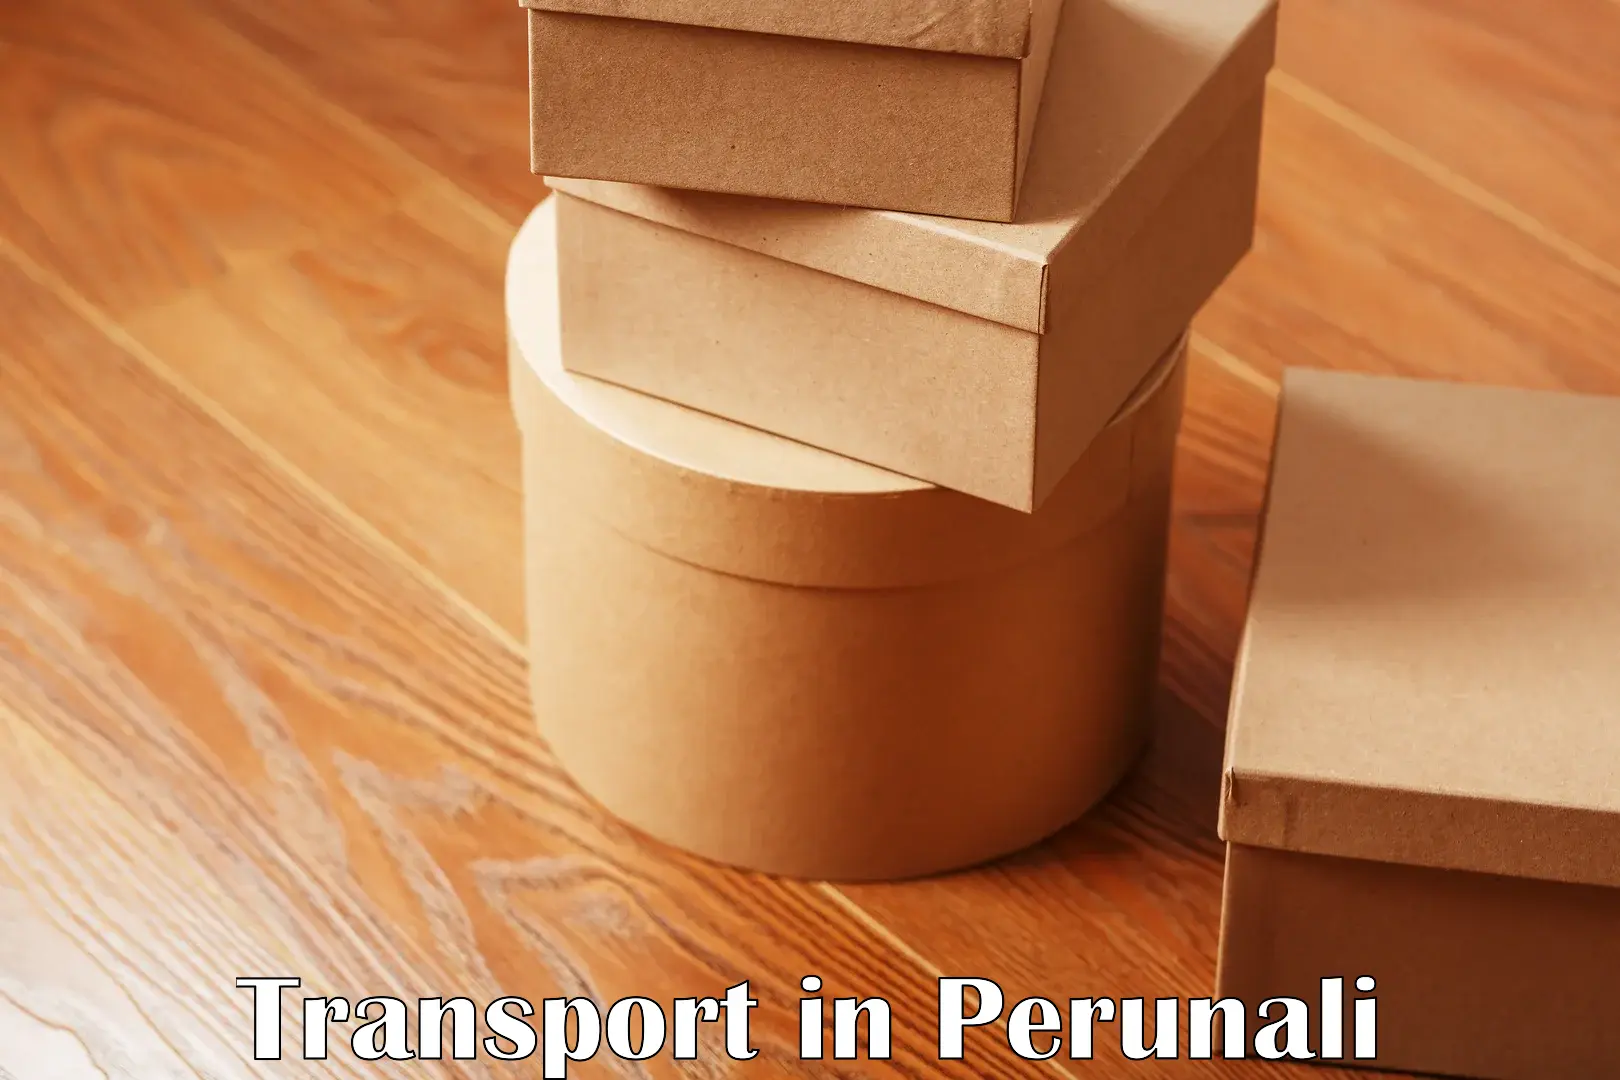 Nearby transport service in Perunali